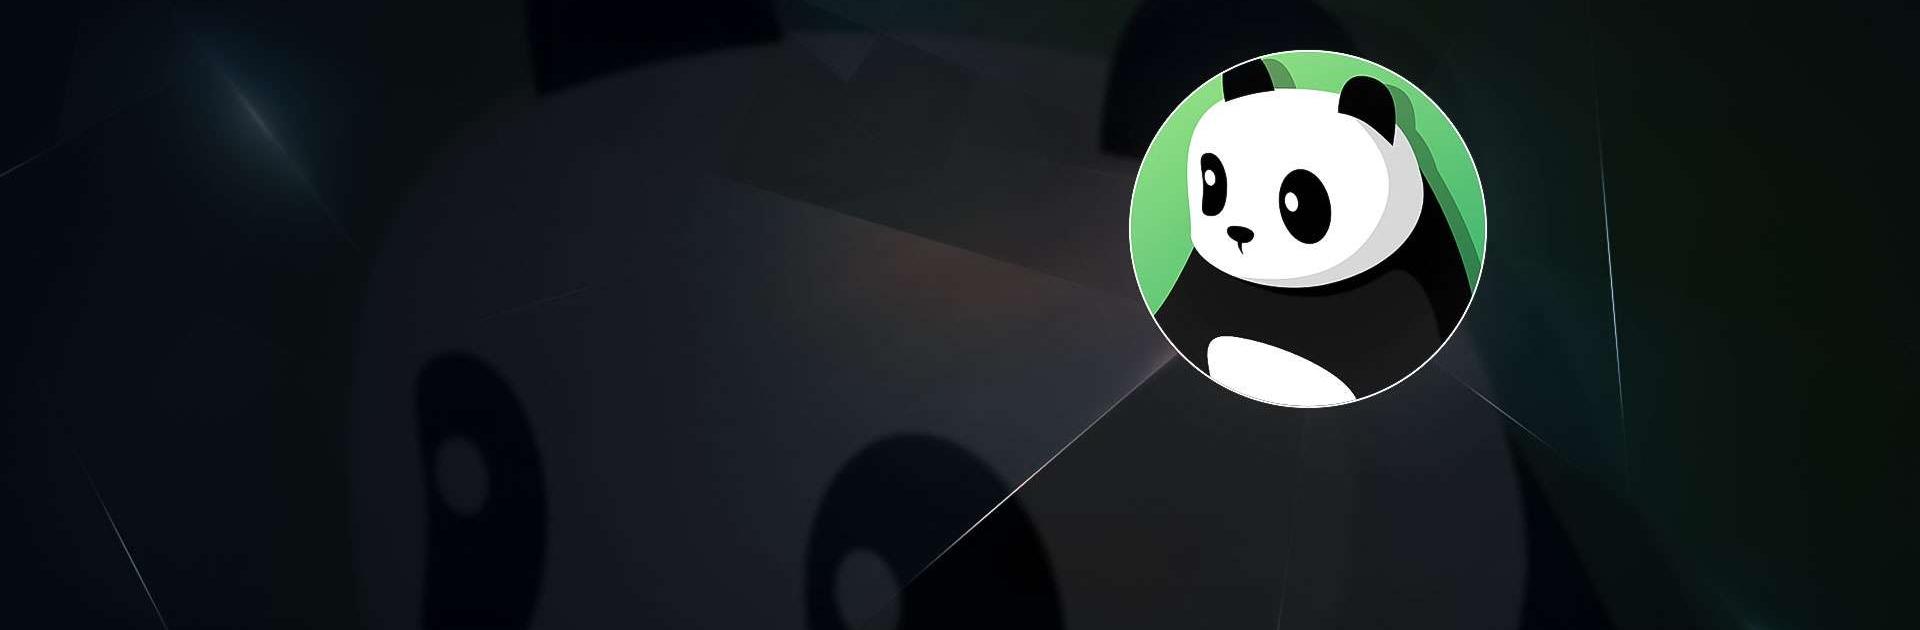 熊貓VPN專業版 - 做極速、私密、安全的VPN代理